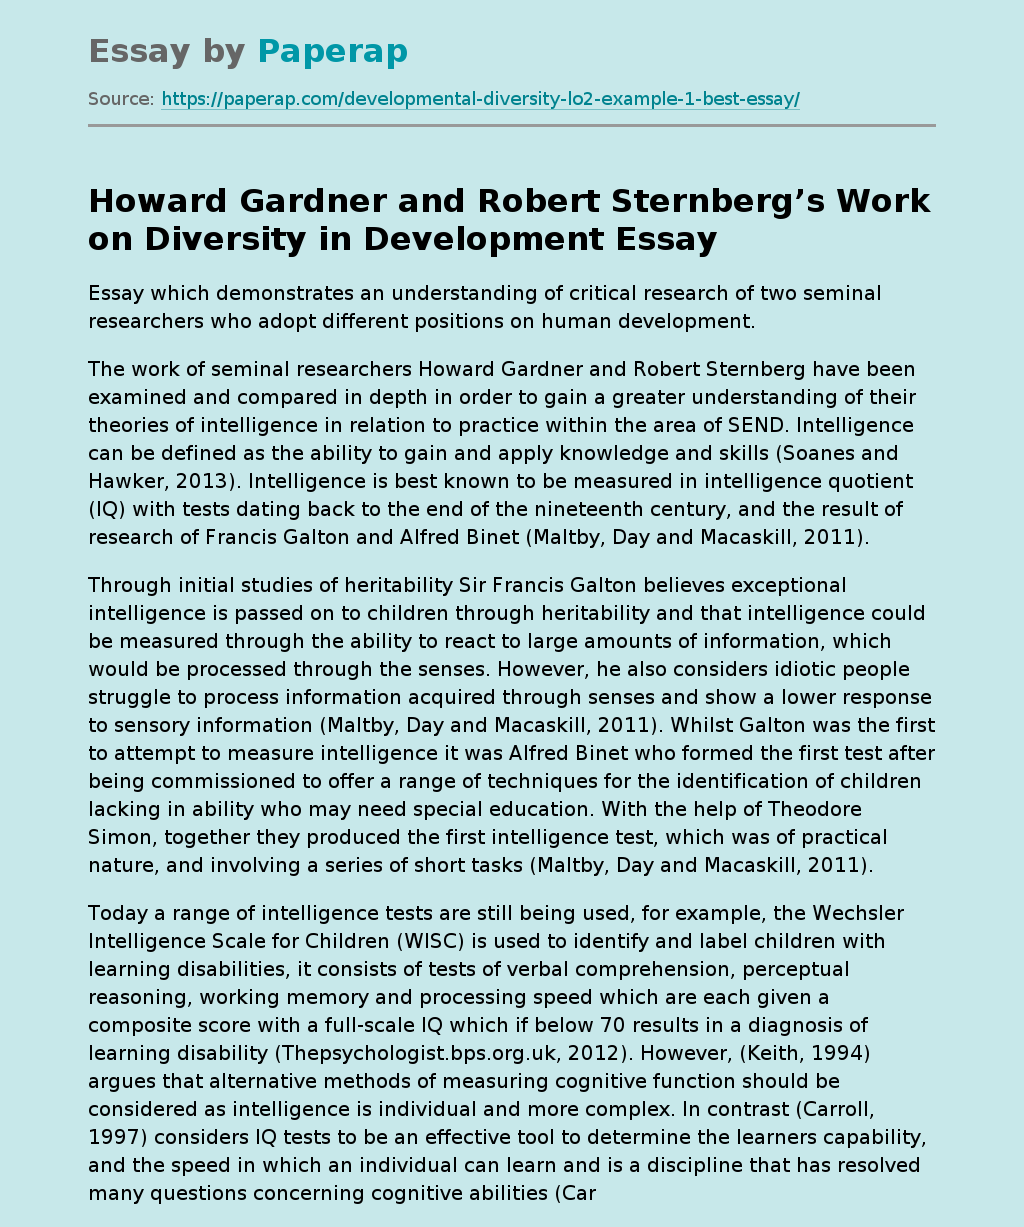 Howard Gardner and Robert Sternberg’s Work on Diversity in Development